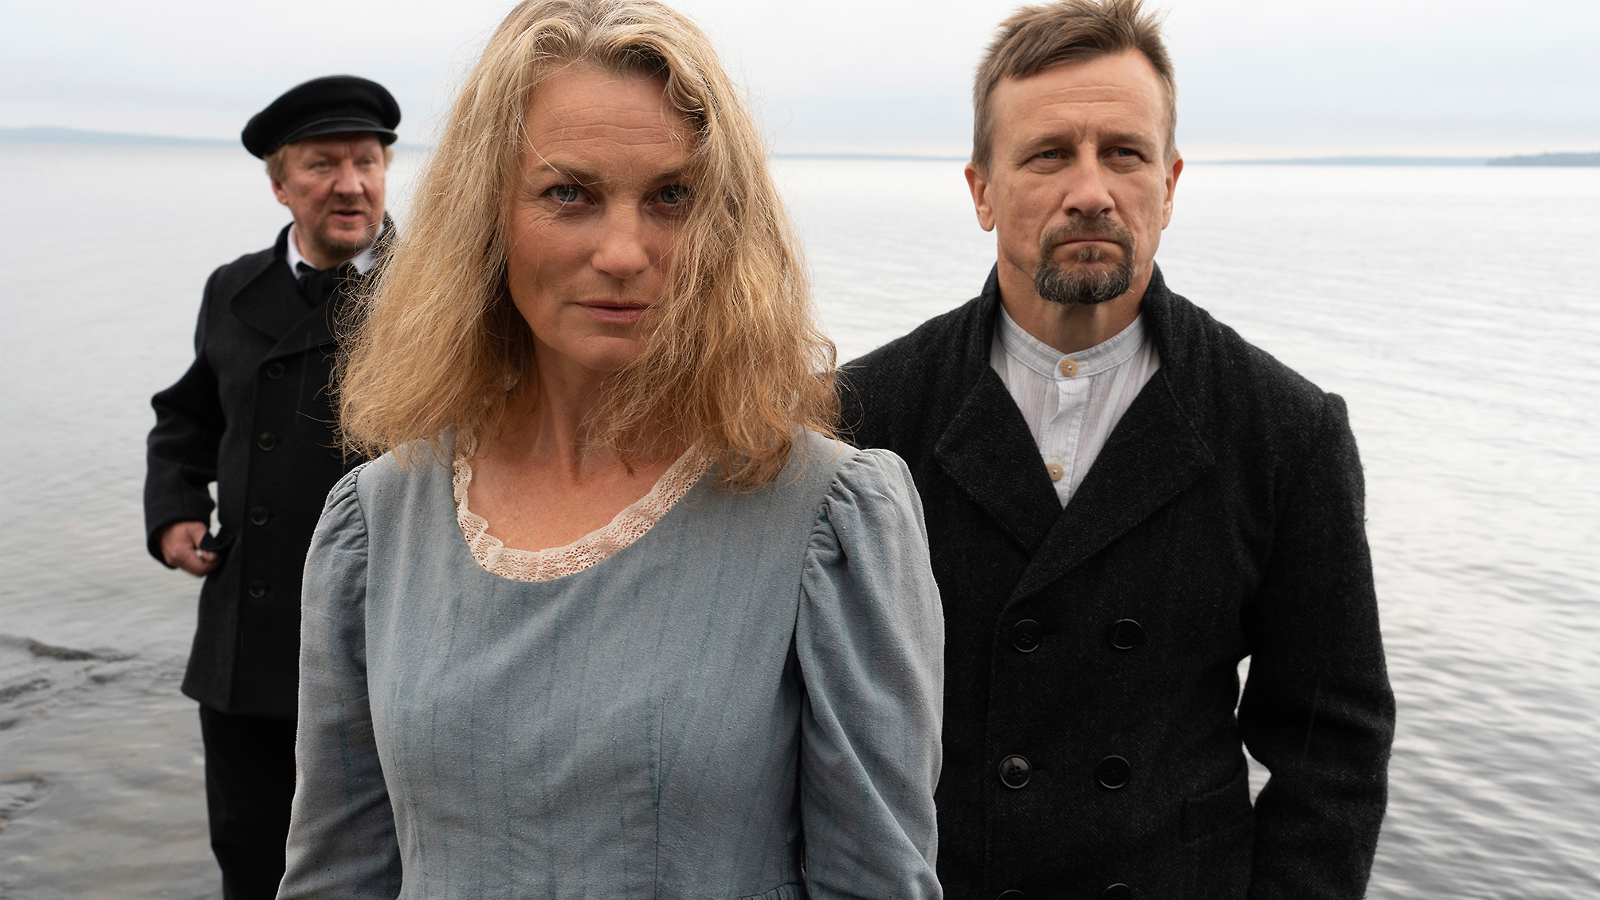 Kuvassa on etualalla harmaassa mekossa Jonna Järnefelt ja taustalla kaksi miestä mustissa takeissa.  He kaikki seisovat ulkona meren rannalla.